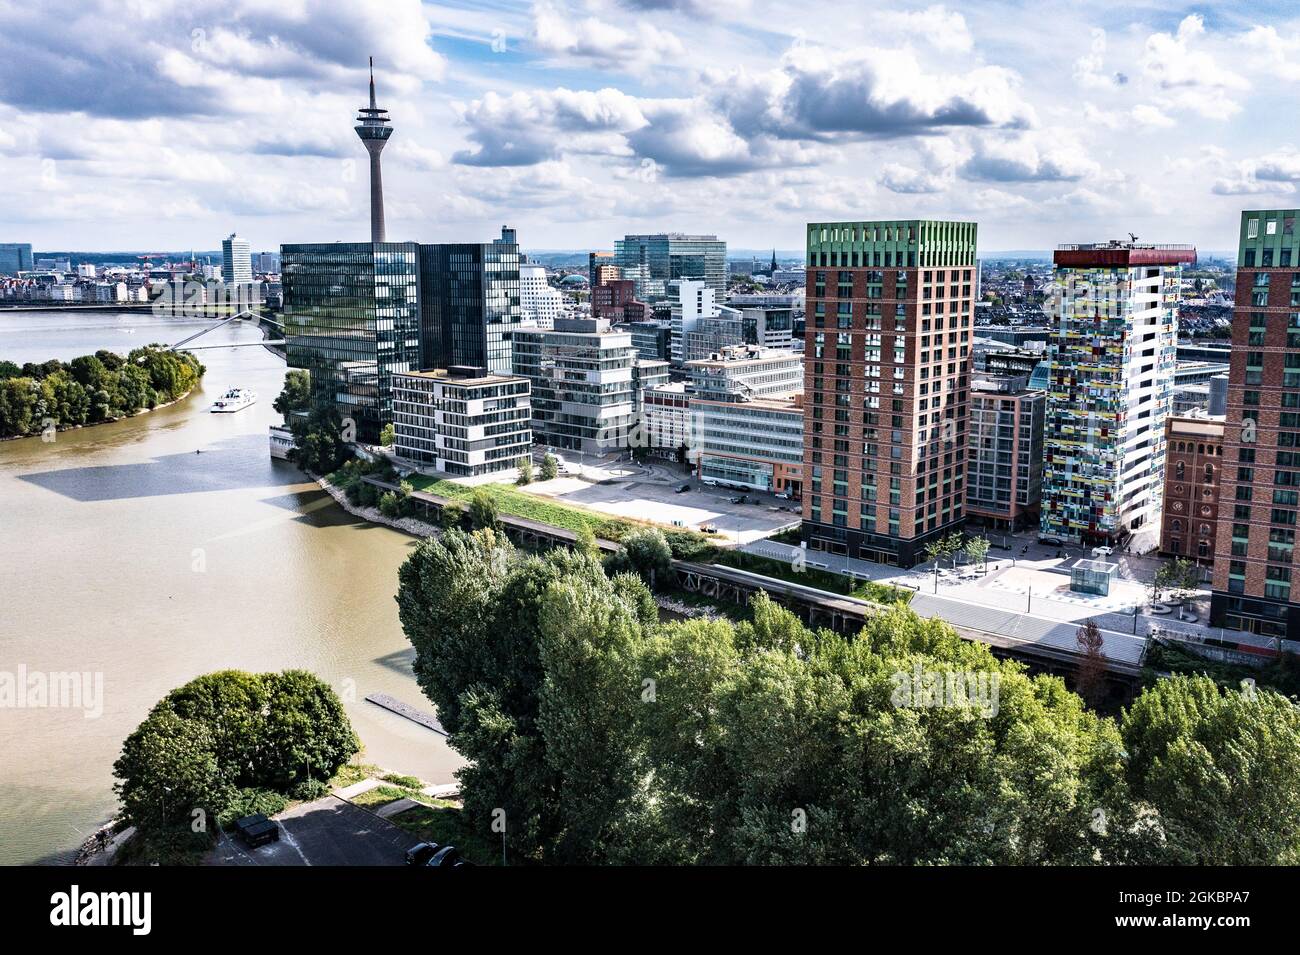 Medienhafen in Düsseldorf mit dem Rhein. Stock Photo